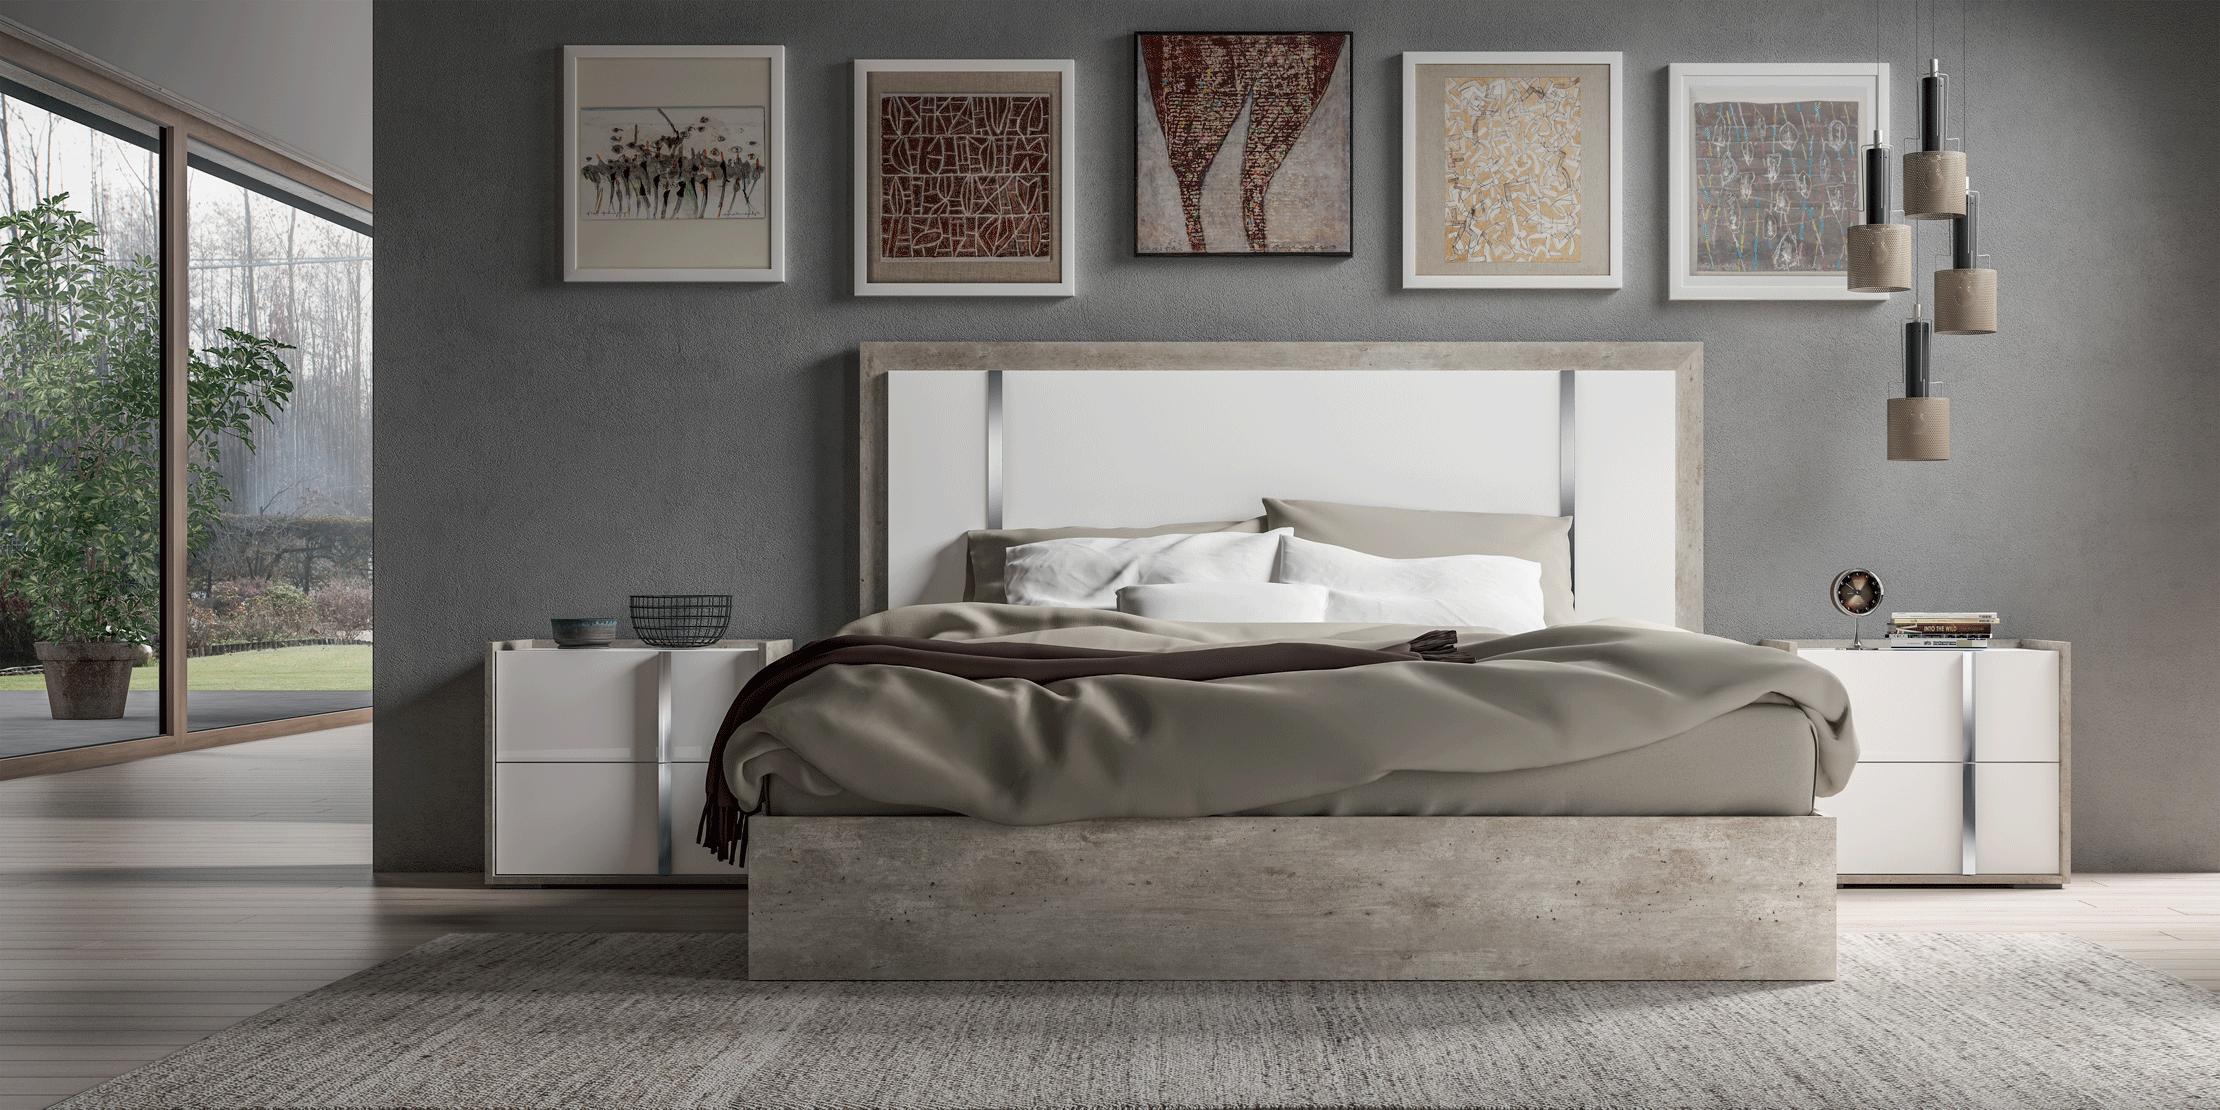 Contemporary, Modern Platform Bedroom Set Treviso Treviso-EK-2N-3PC in White, Gray 